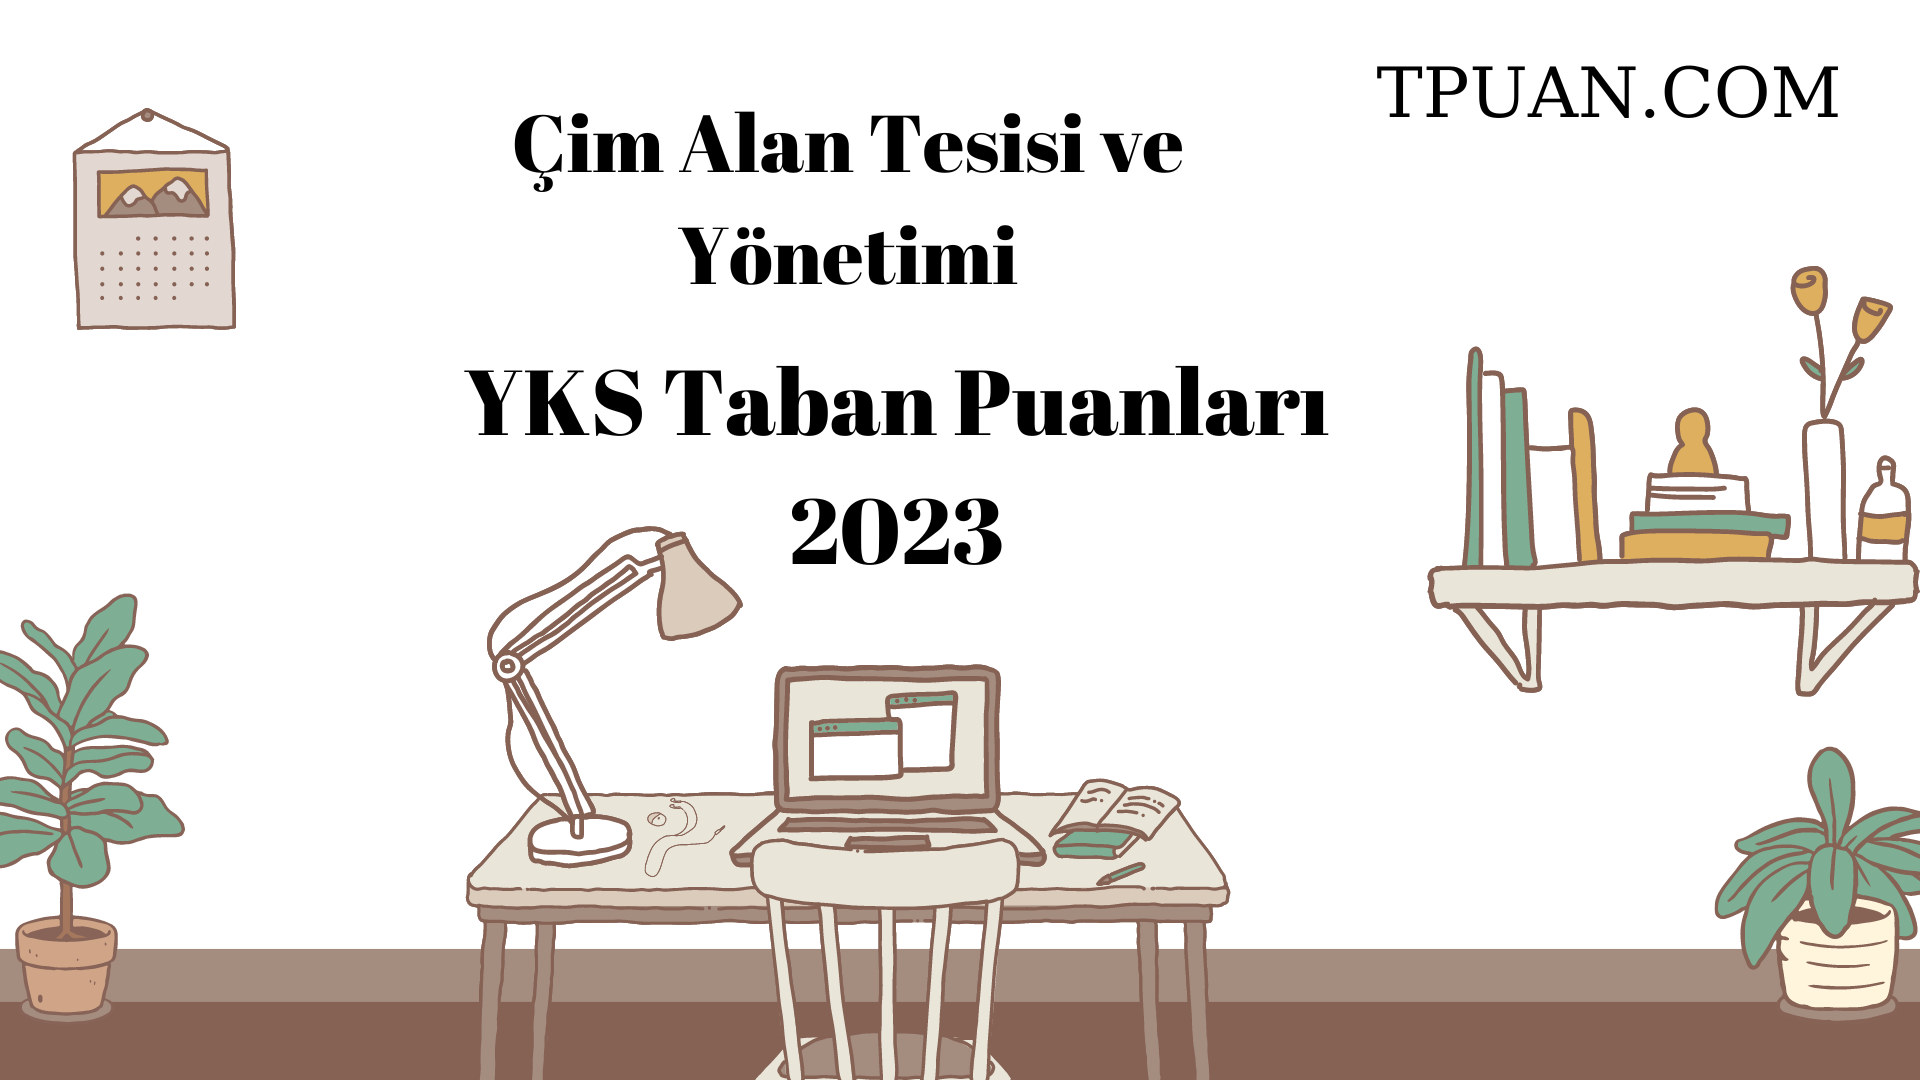  Çim Alan Tesisi ve Yönetimi YKS Taban Puanları 2023